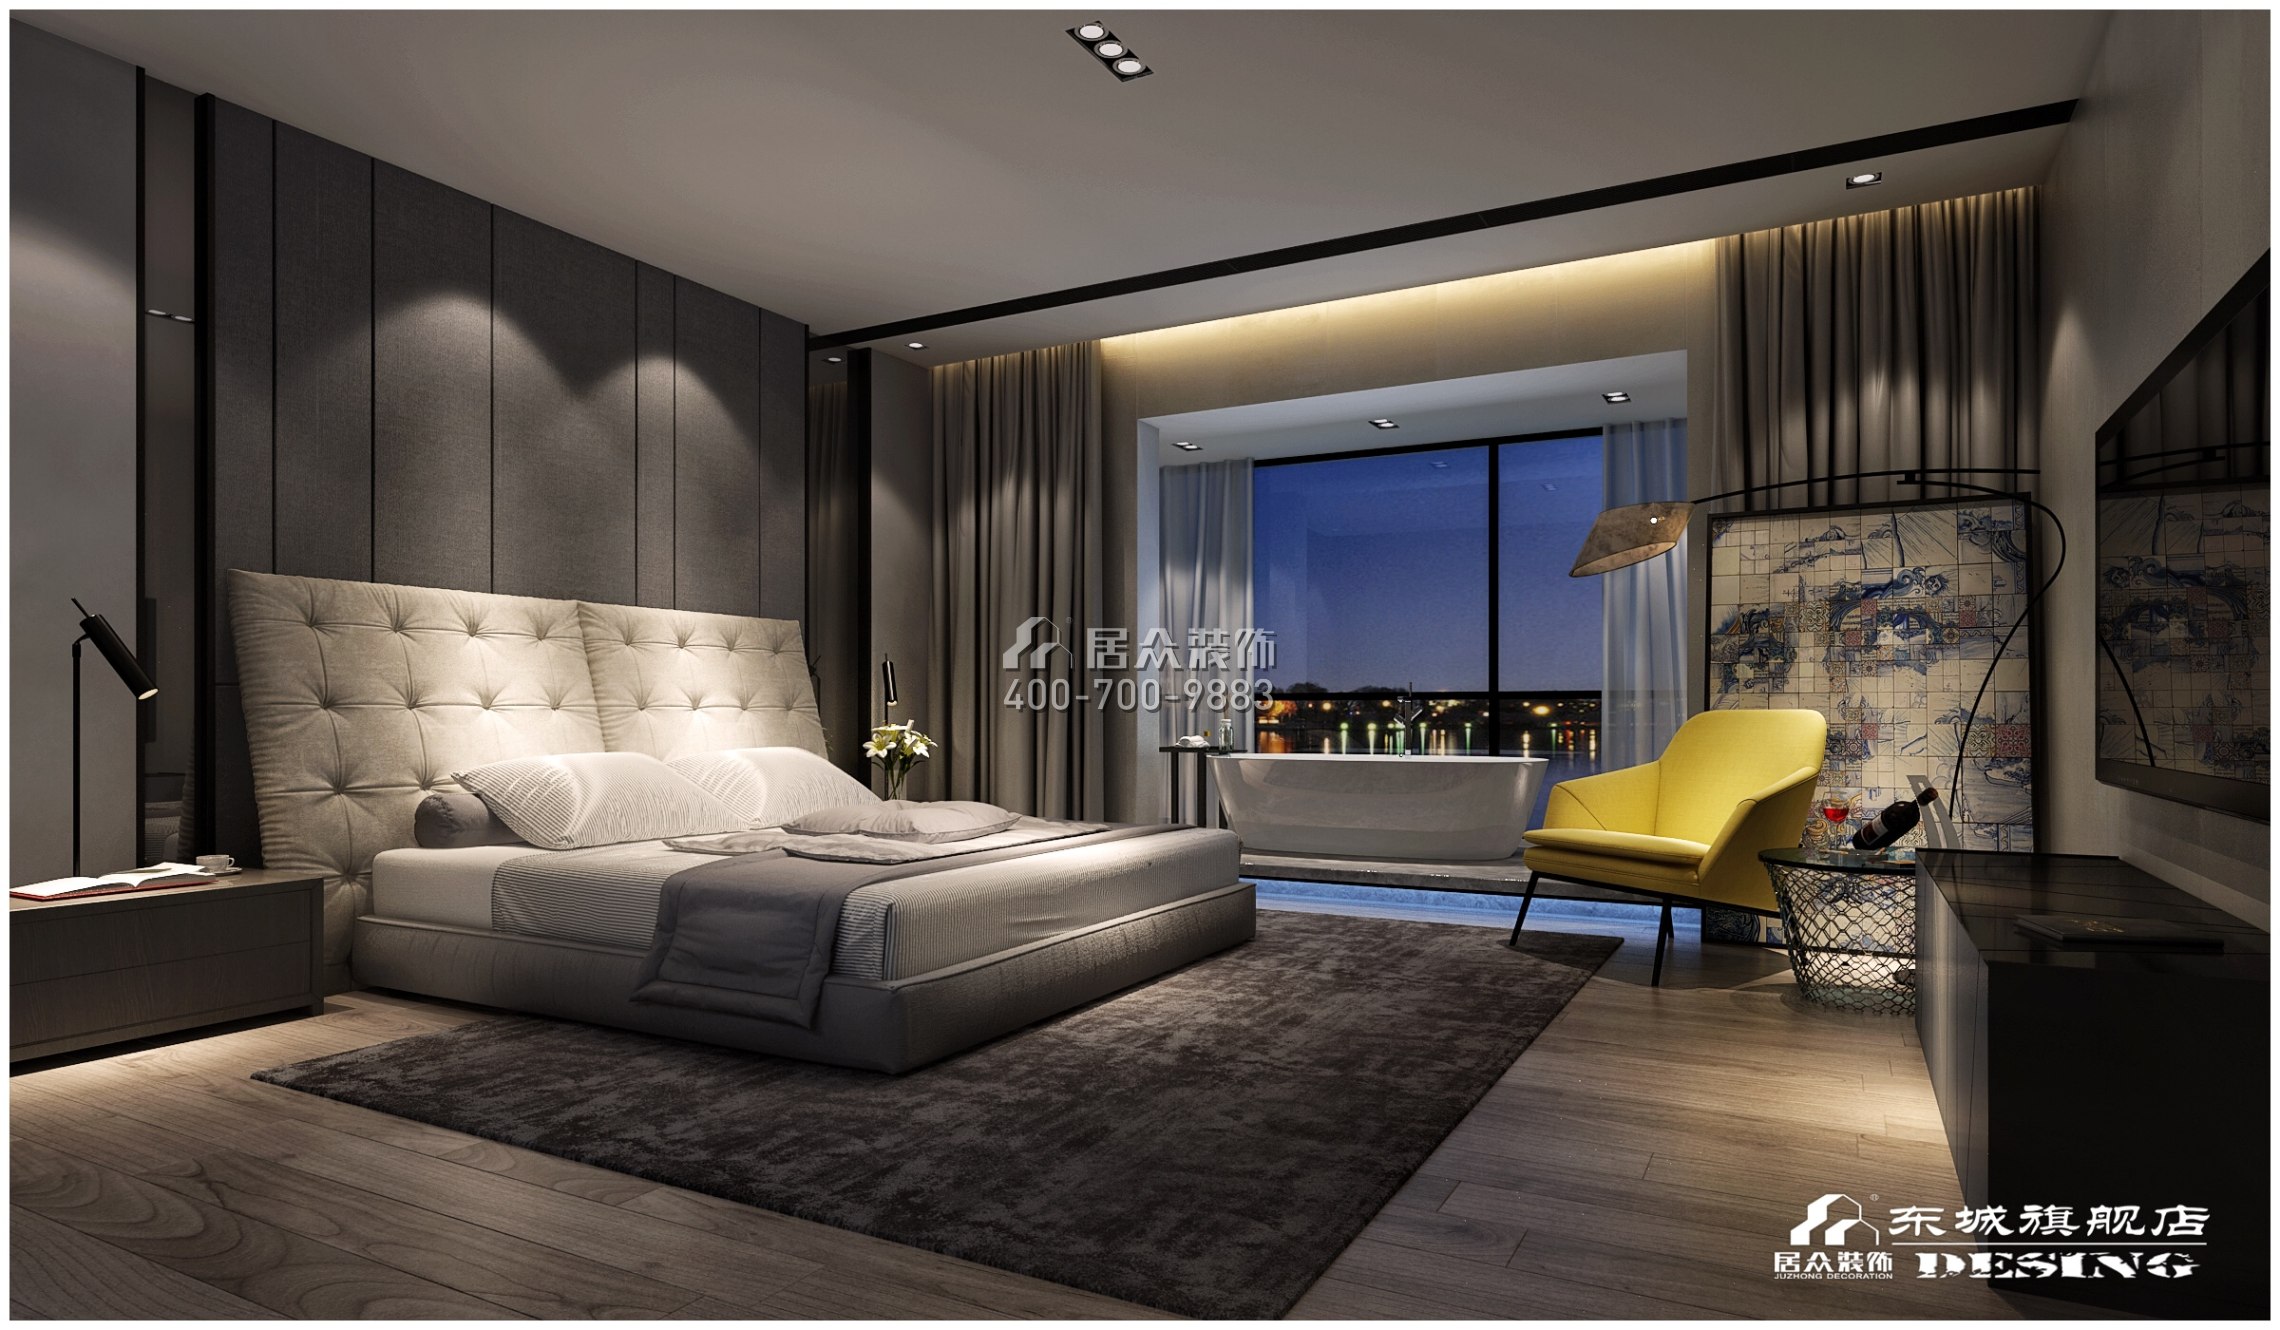 北辰定江洋210平方米中式风格平层户型卧室装修效果图